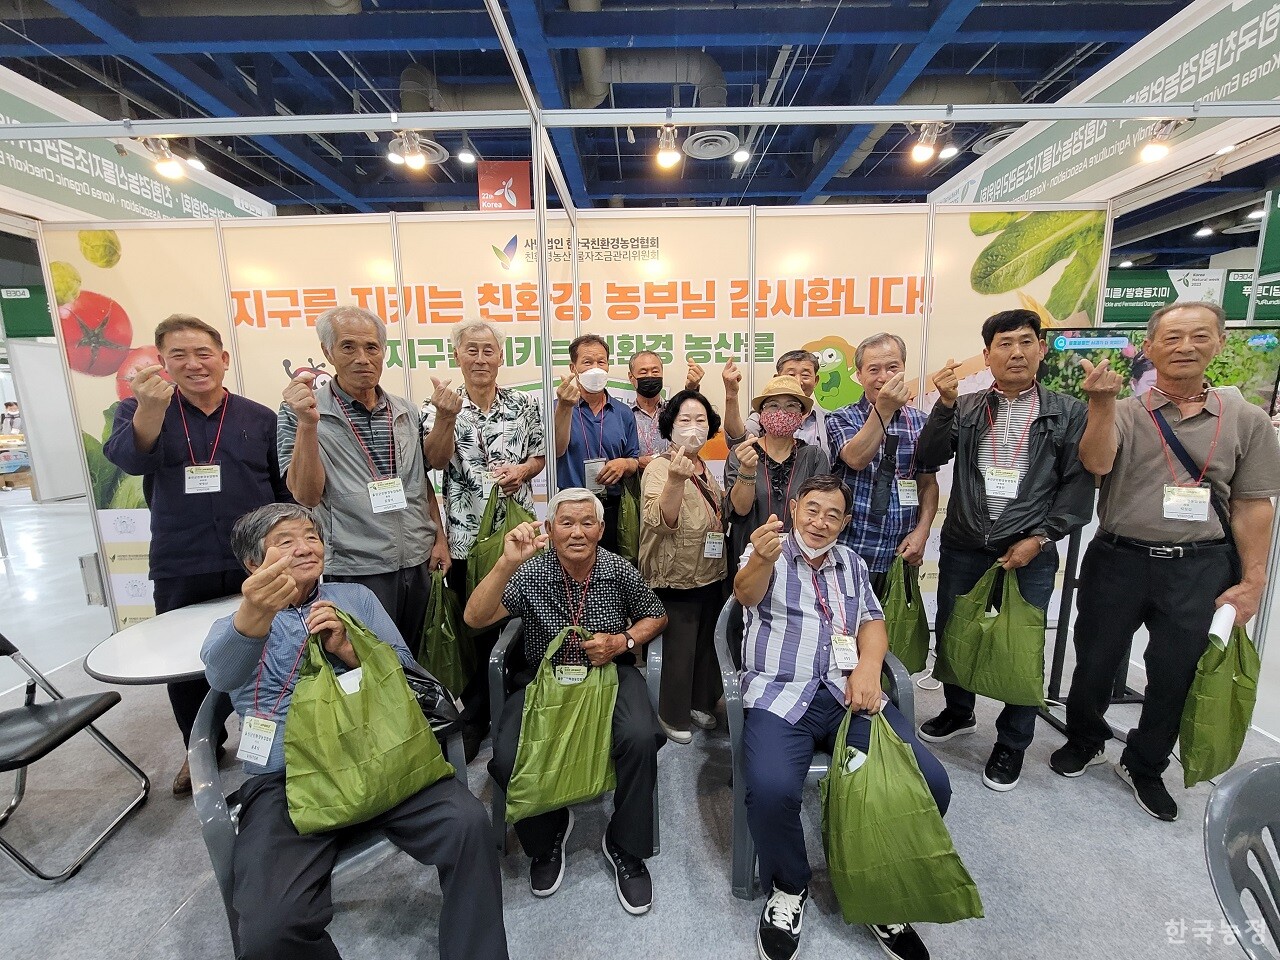 친환경농산물자조금관리위원회는 지난 8월30일~9월 1일에 걸쳐 서울 코엑스에서 열린 ‘친환경유기농 무역박람회’에 참가한 친환경농민들에게 감사꾸러미를 증정했다. 감사꾸러미를 받은 친환경농민들이 한자리에 모였다. 친환경농산물자조금관리위원회 제공